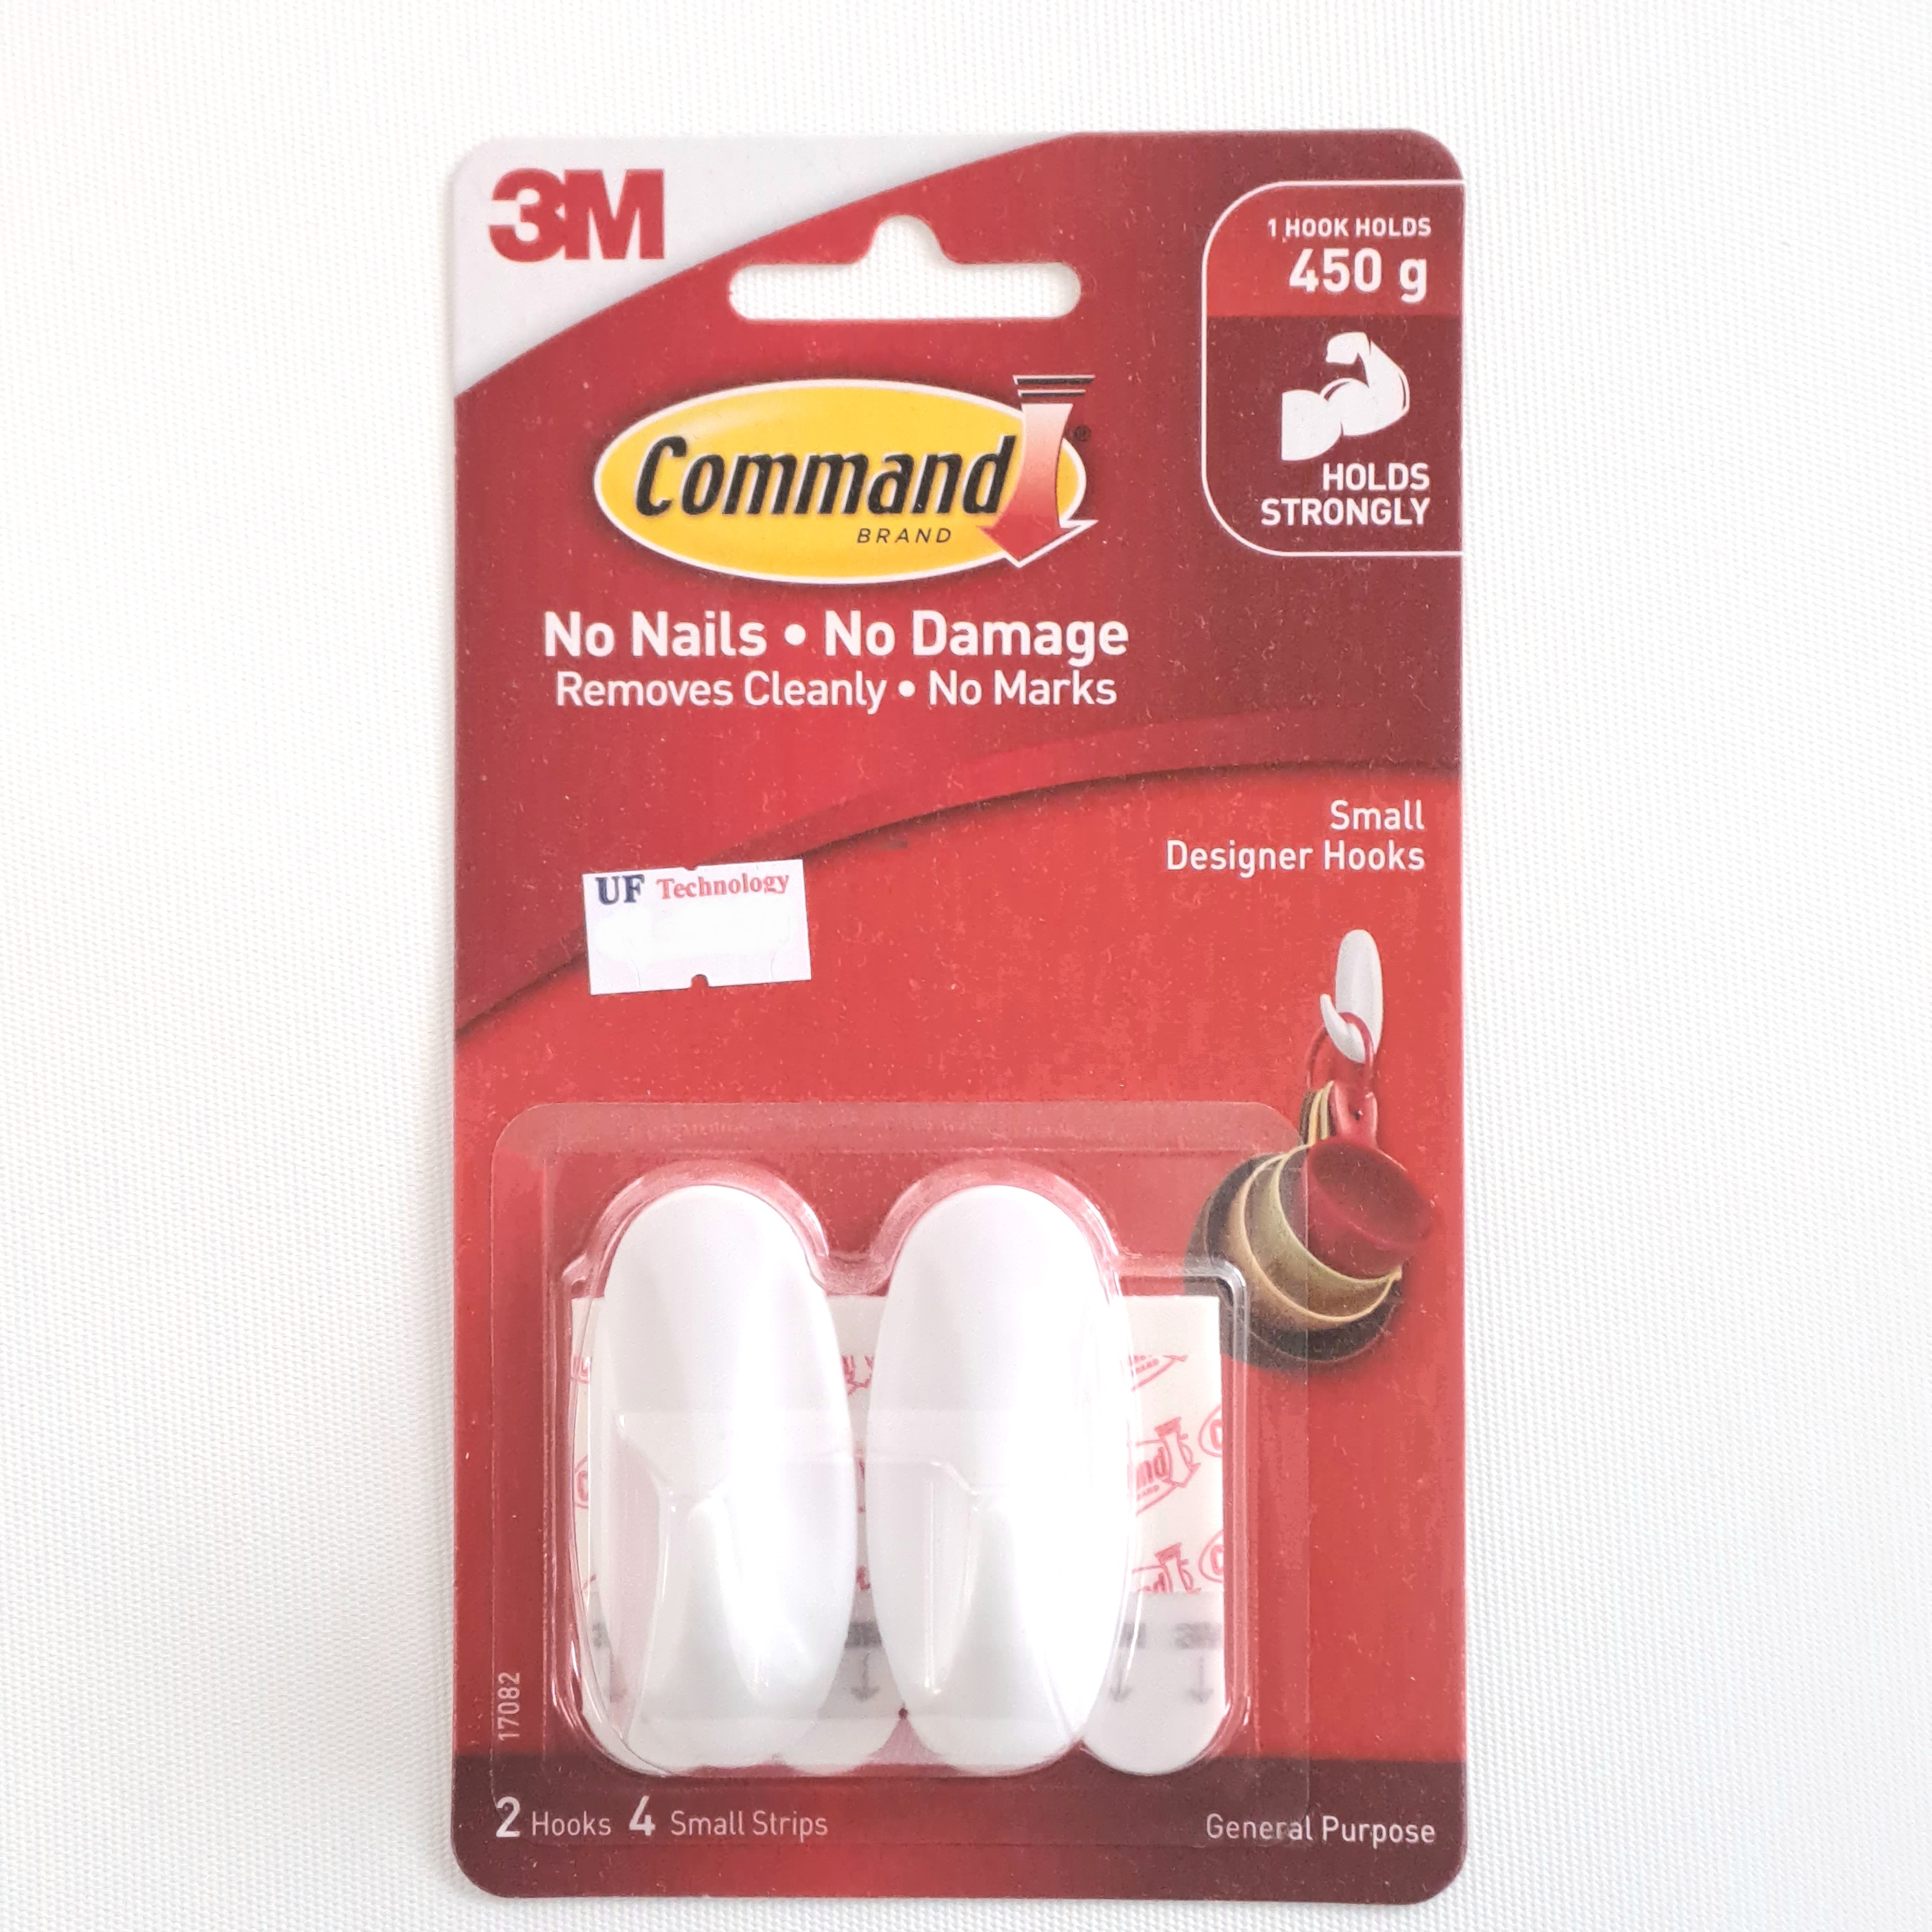 3M Command White Designer Small Hooks 2 Hooks 4 Strips